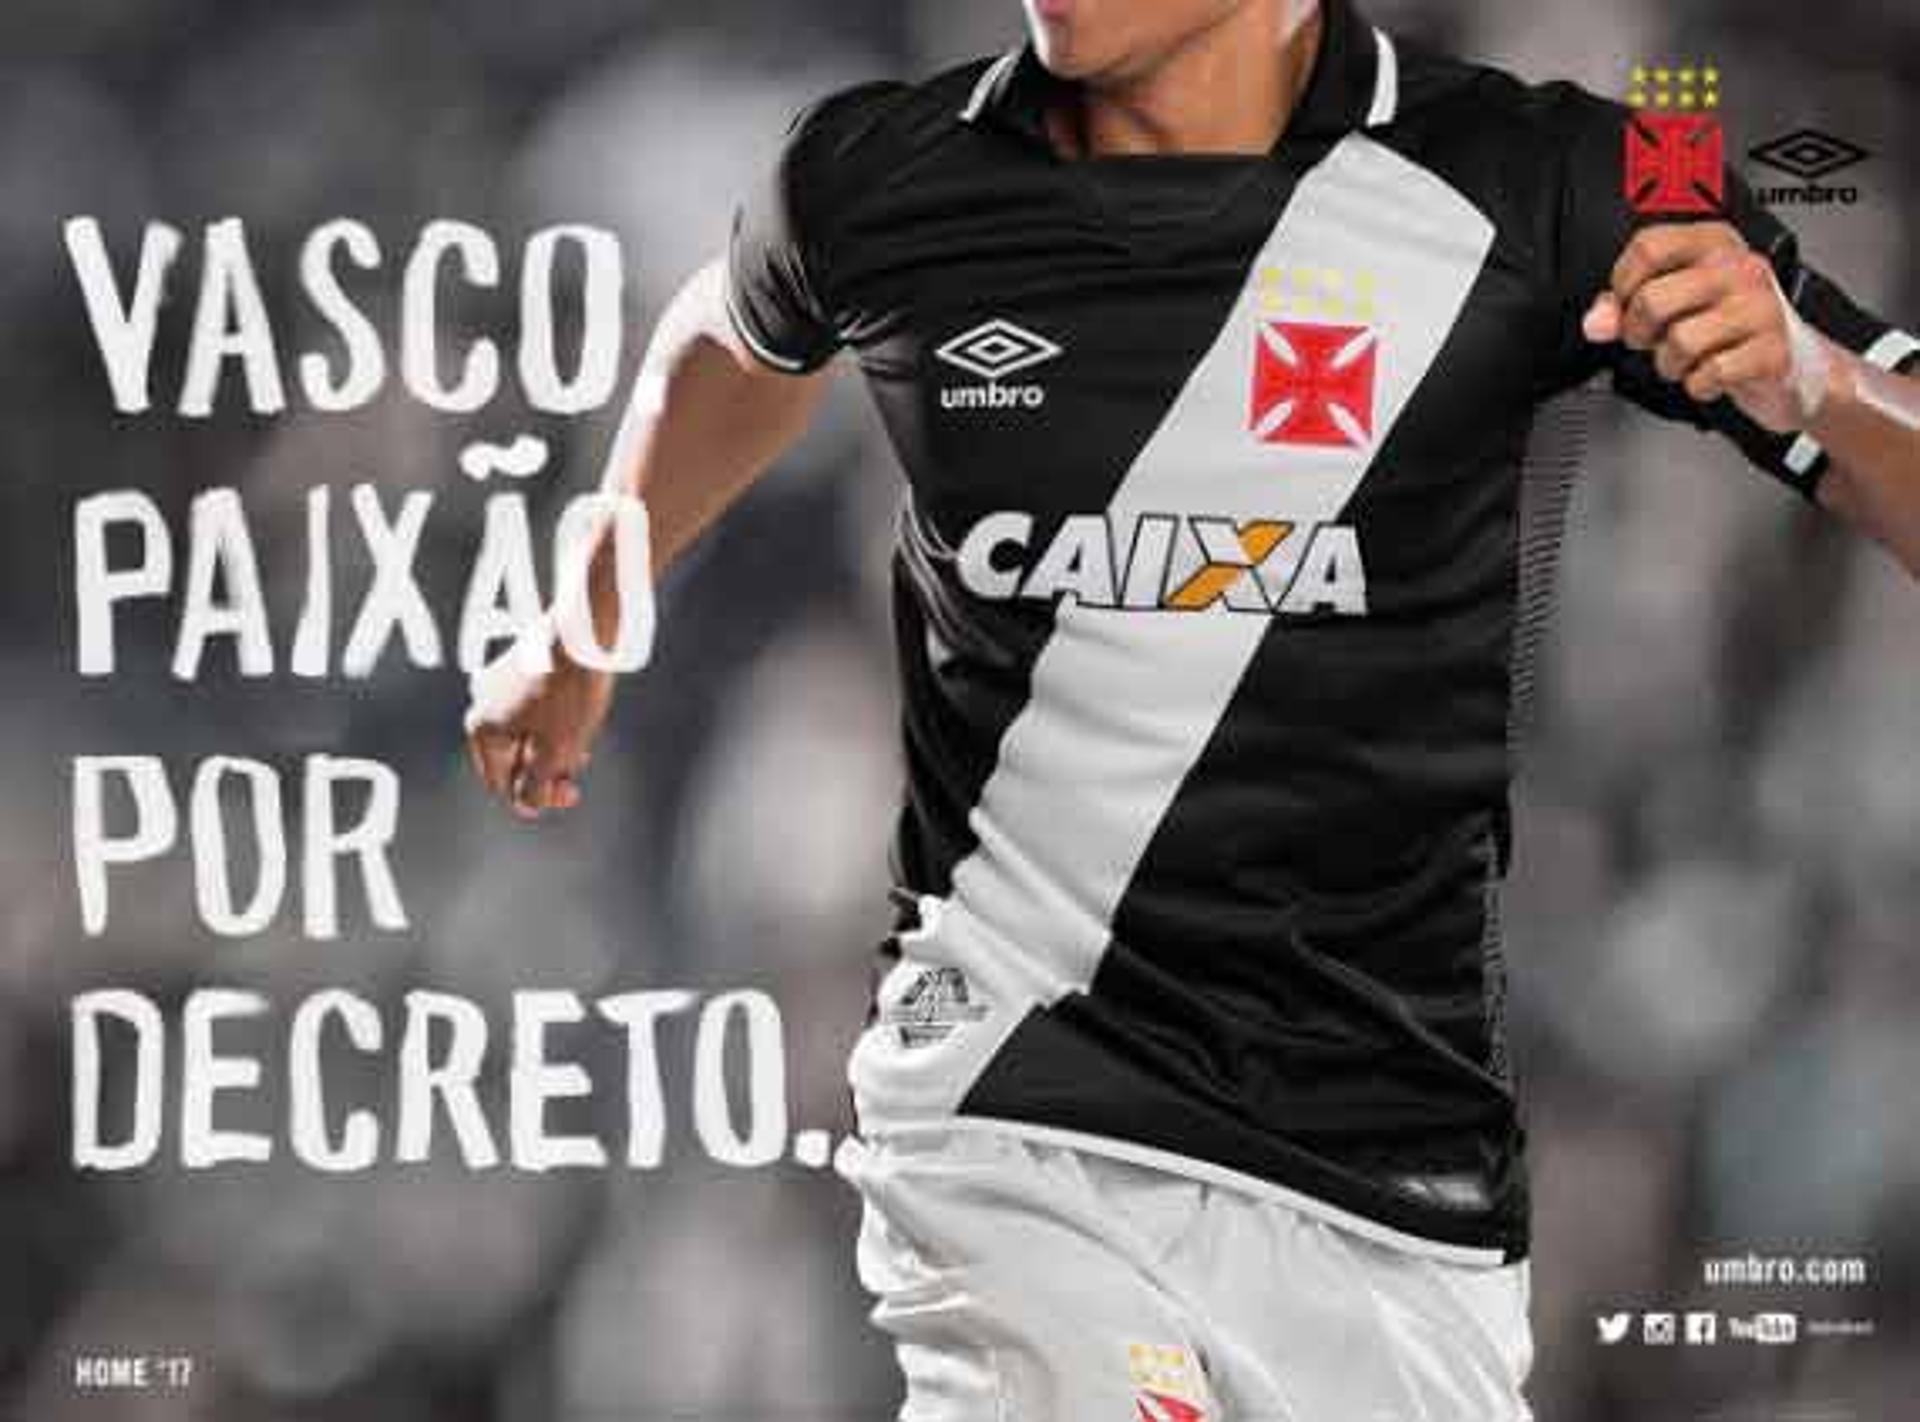 Confira a seguir imagens das novas camisa do Vasco